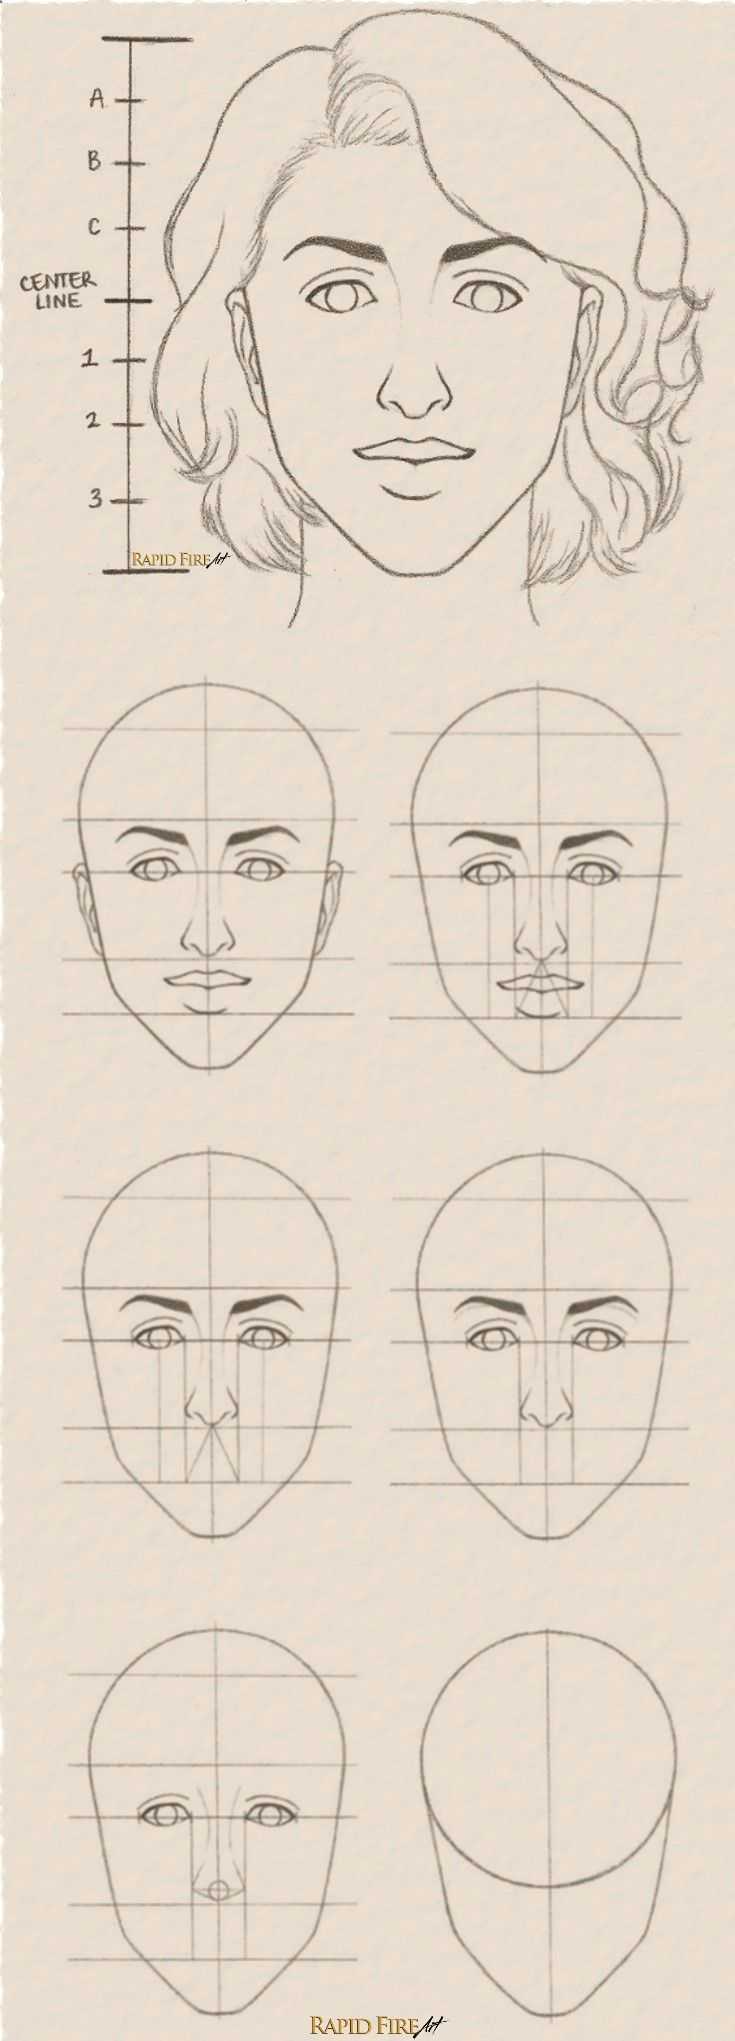 Как нарисовать лицо девушки?. техника рисования лица девушки. в статье рассказывается о том, как можно просто нарисовать лицо девушки.